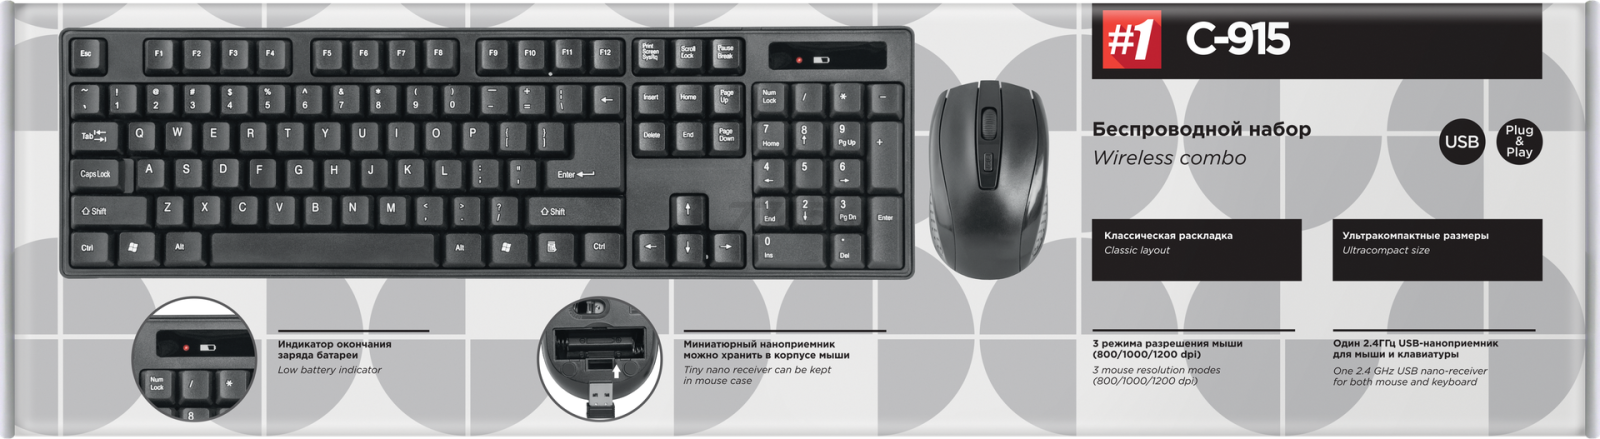 Комплект беспроводной клавиатура и мышь DEFENDER C-915 (45915) - Фото 6